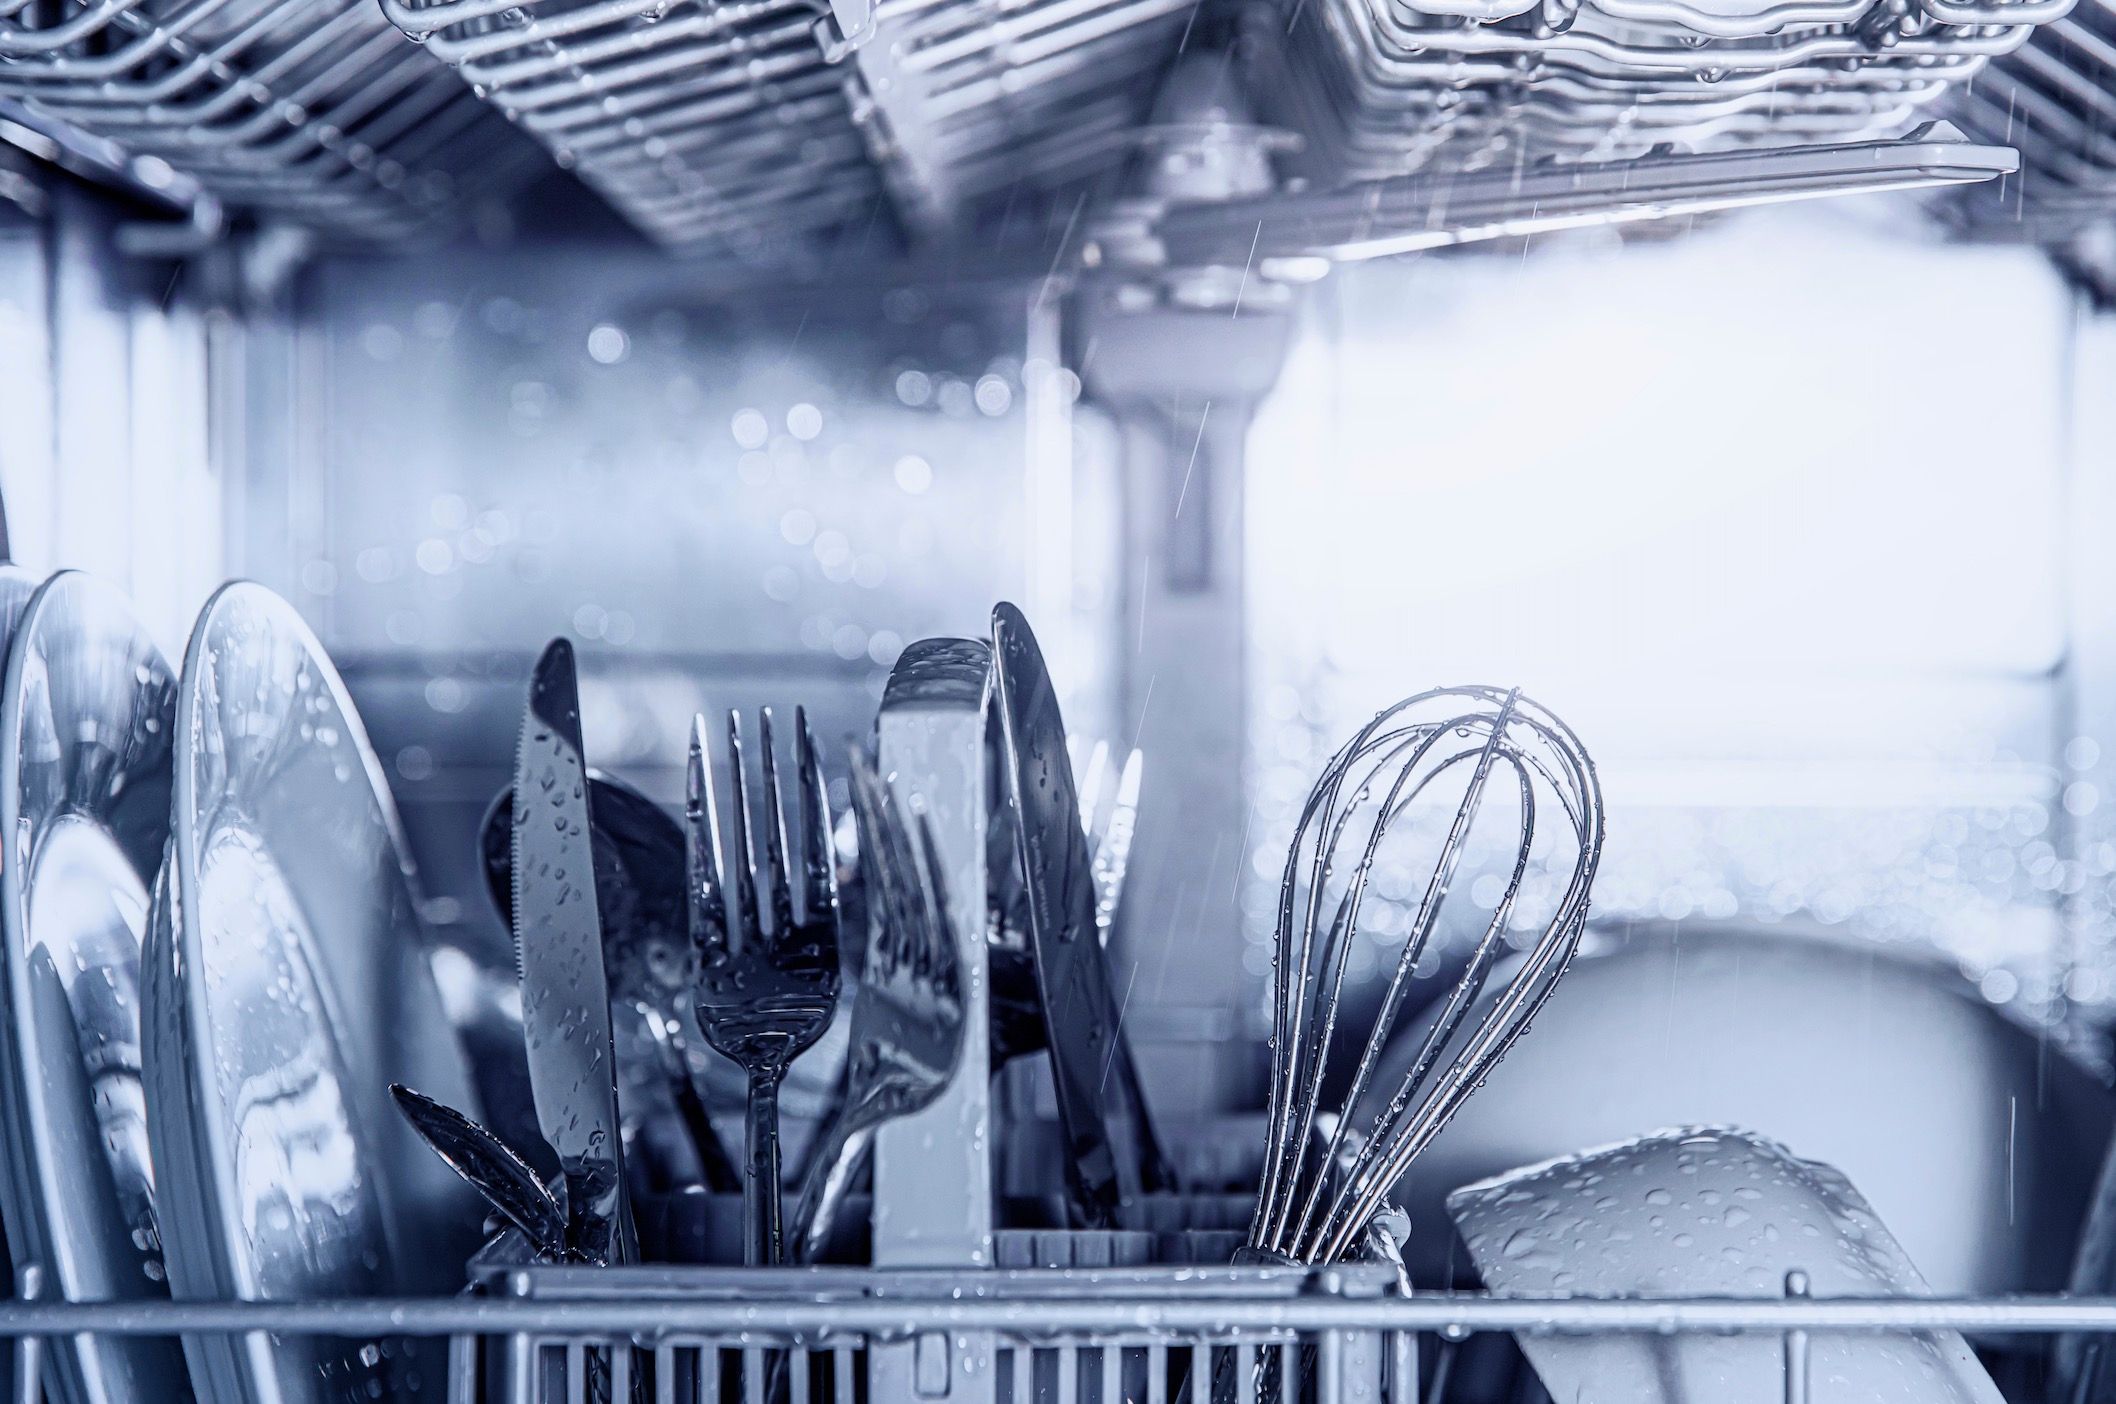 Pourquoi vous ne devriez pas mettre les couteaux au lave-vaisselle